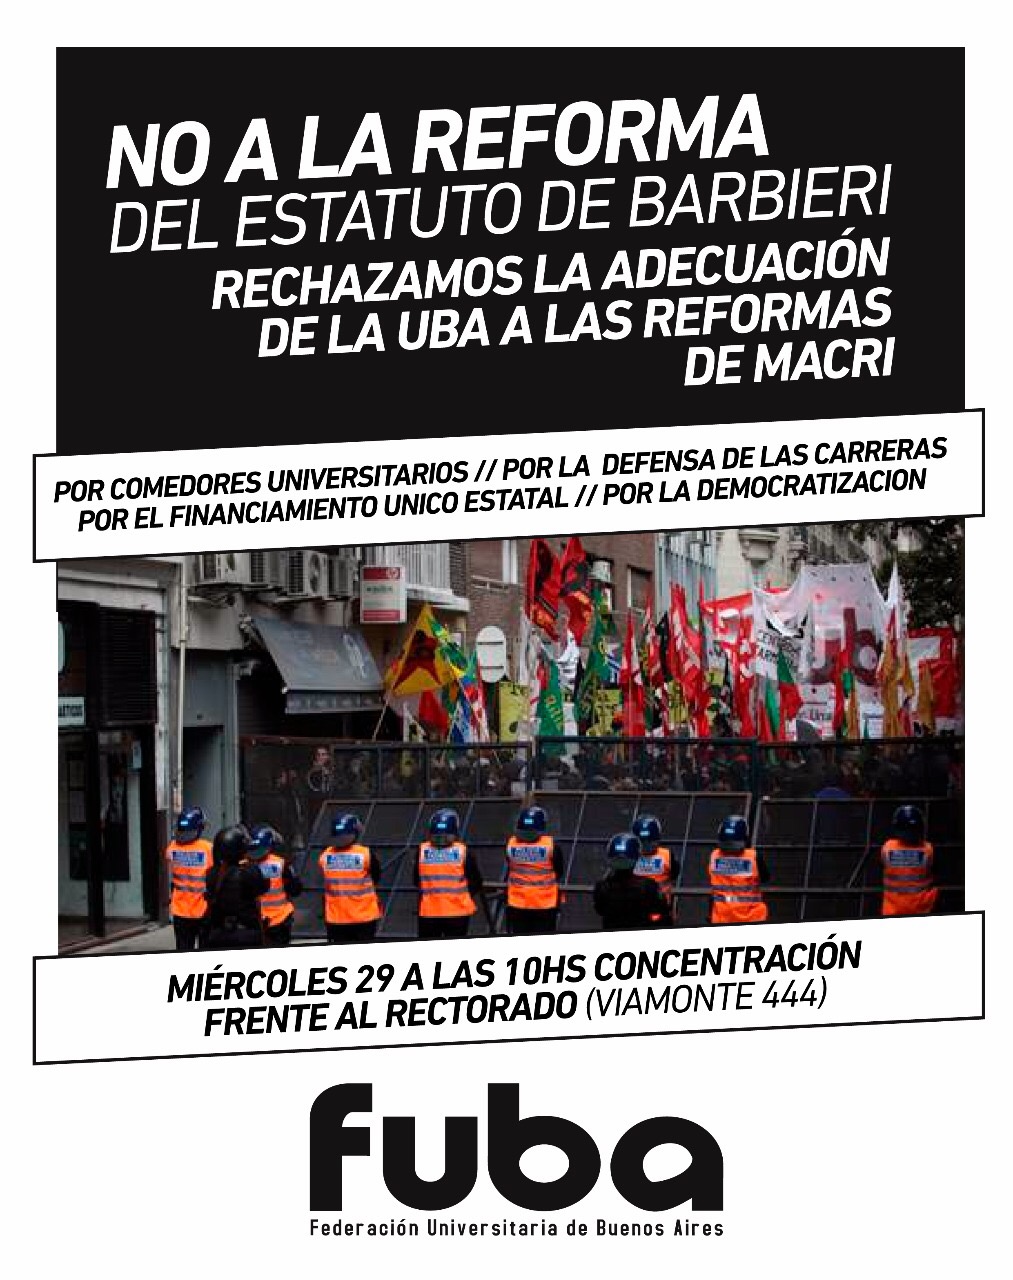 La FUBA rechaza reforma del estatuto y se moviliza al Rectorado